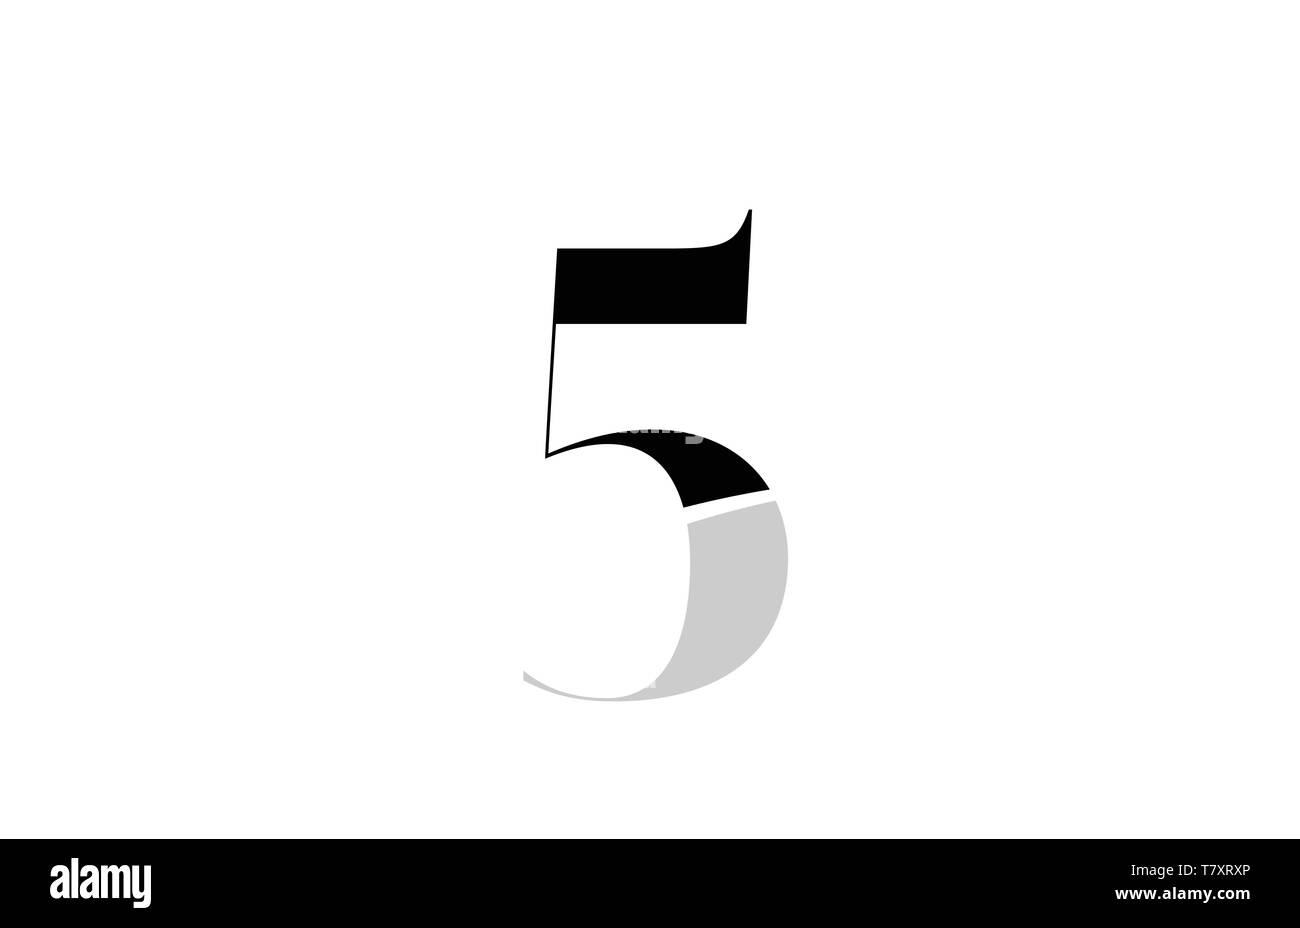 five logo